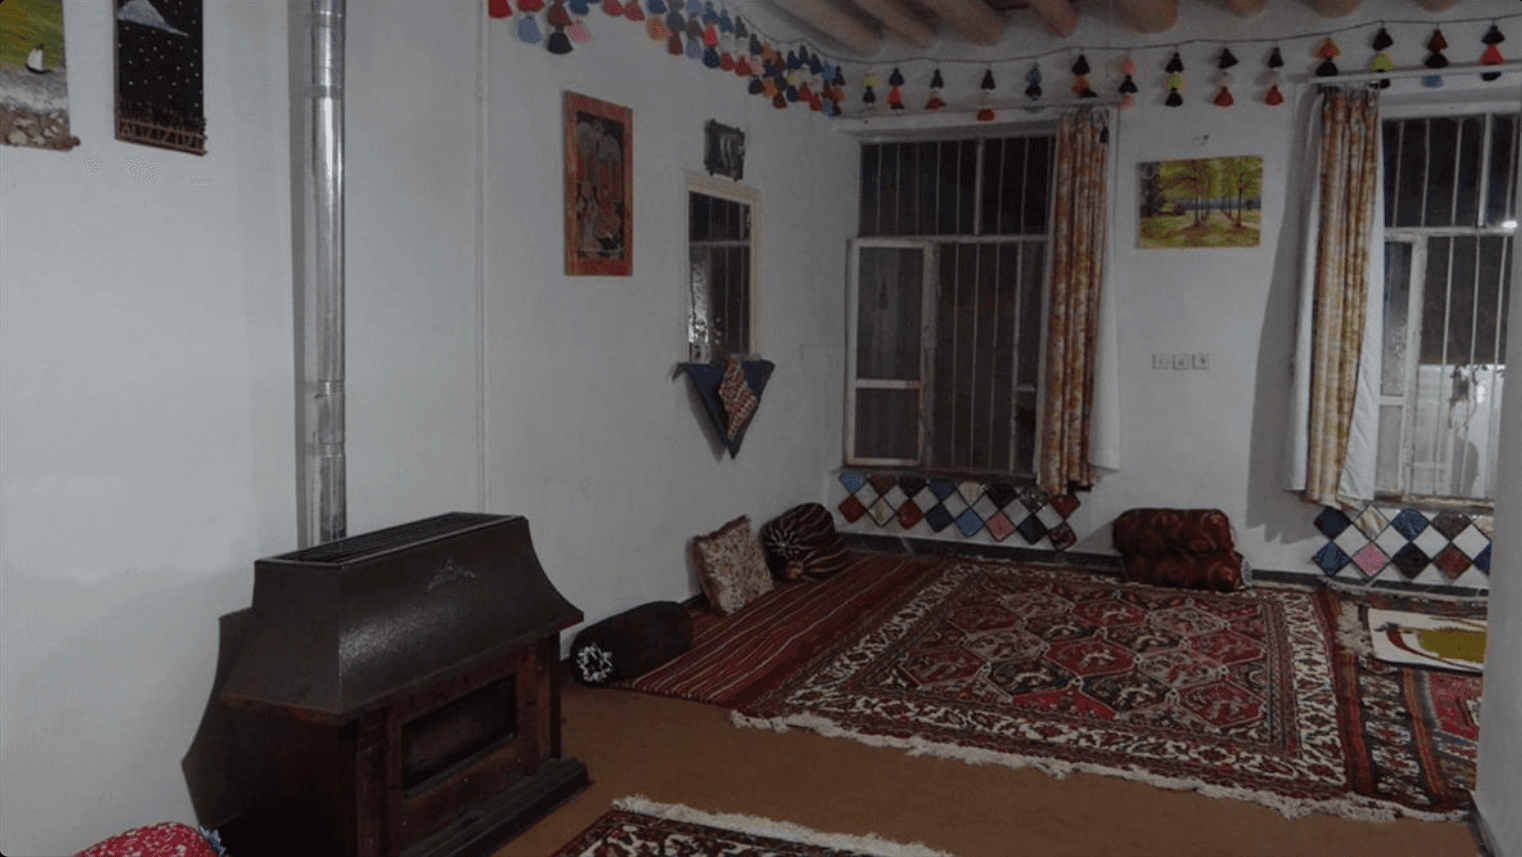 اجاره خانه سنتی بابا ابراهیم در سمیرم